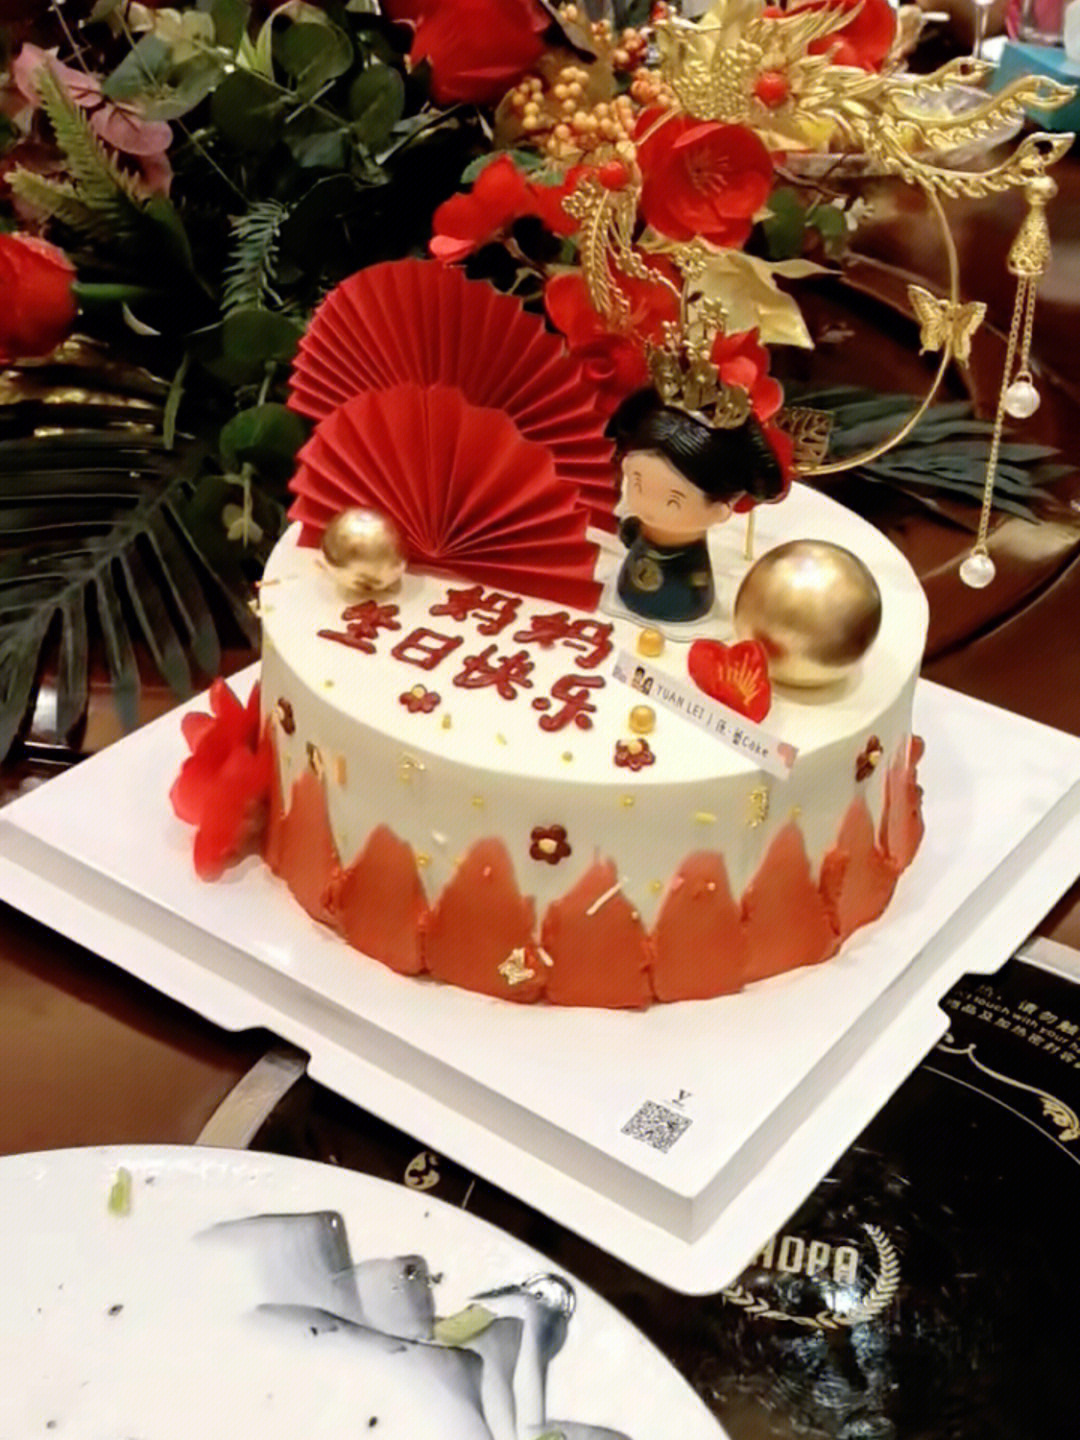 50岁生日蛋糕题字图片